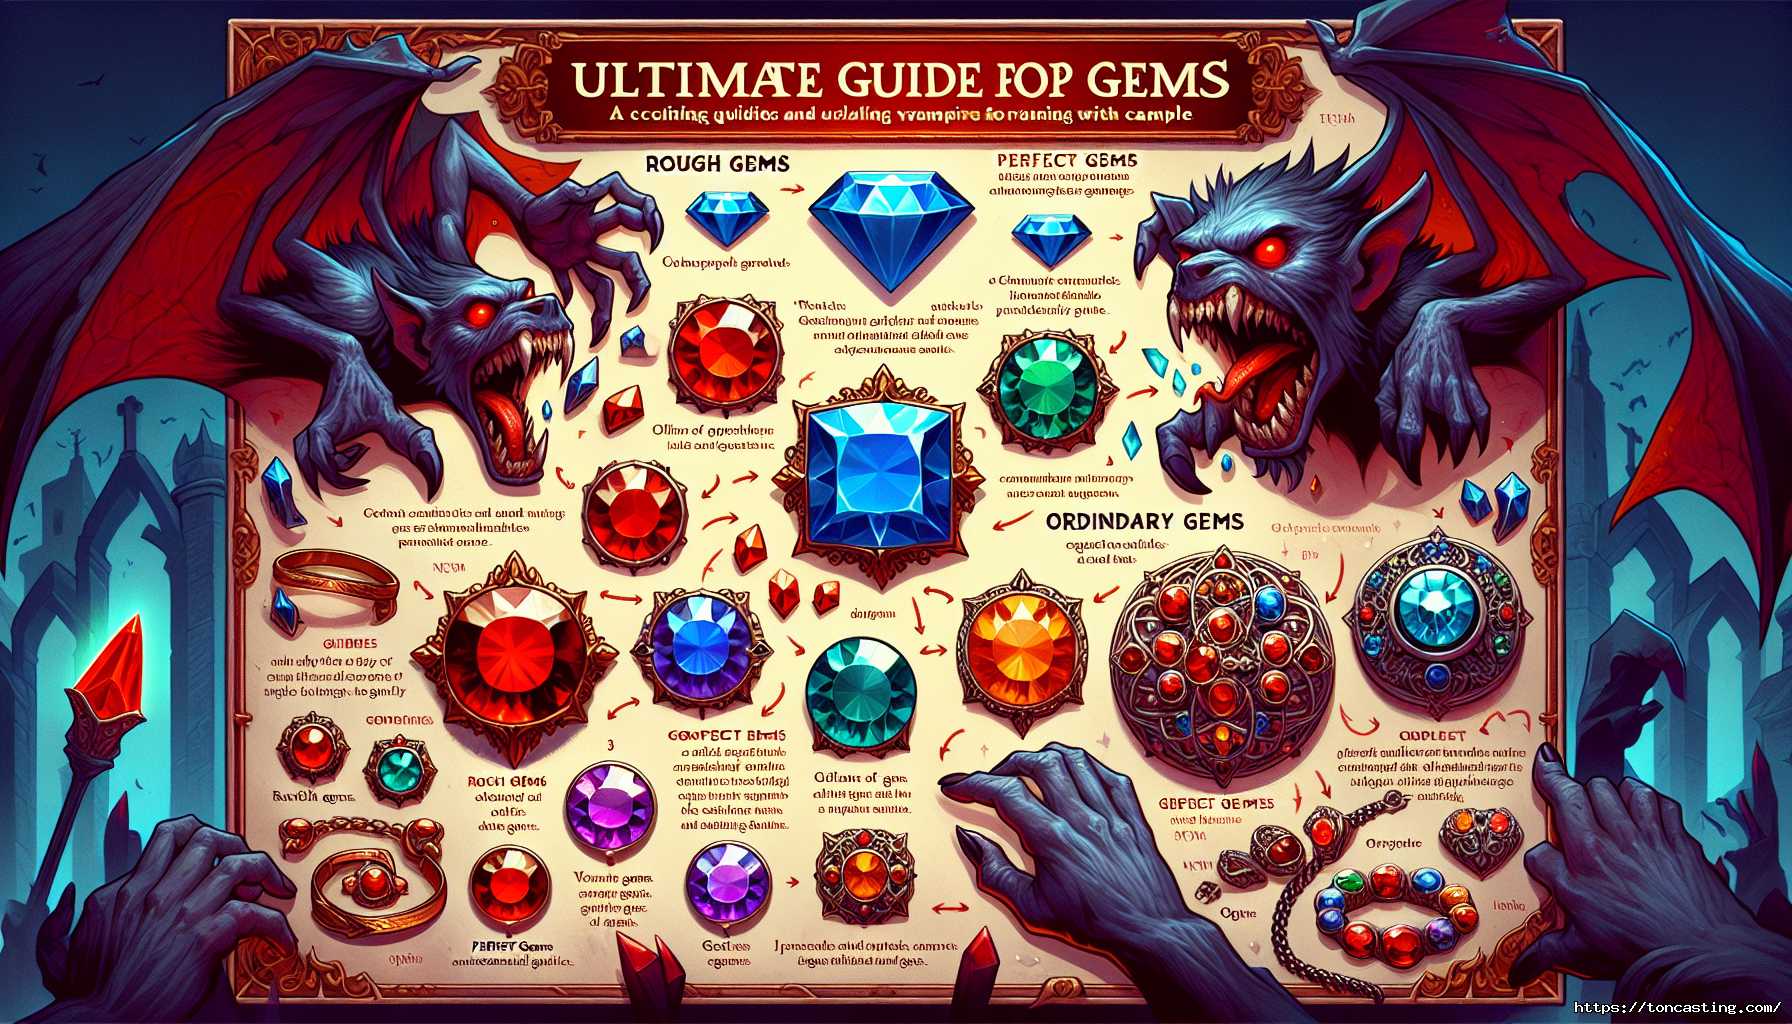 Guide des gemmes avec des illustrations de vampires et différentes pierres précieuses.